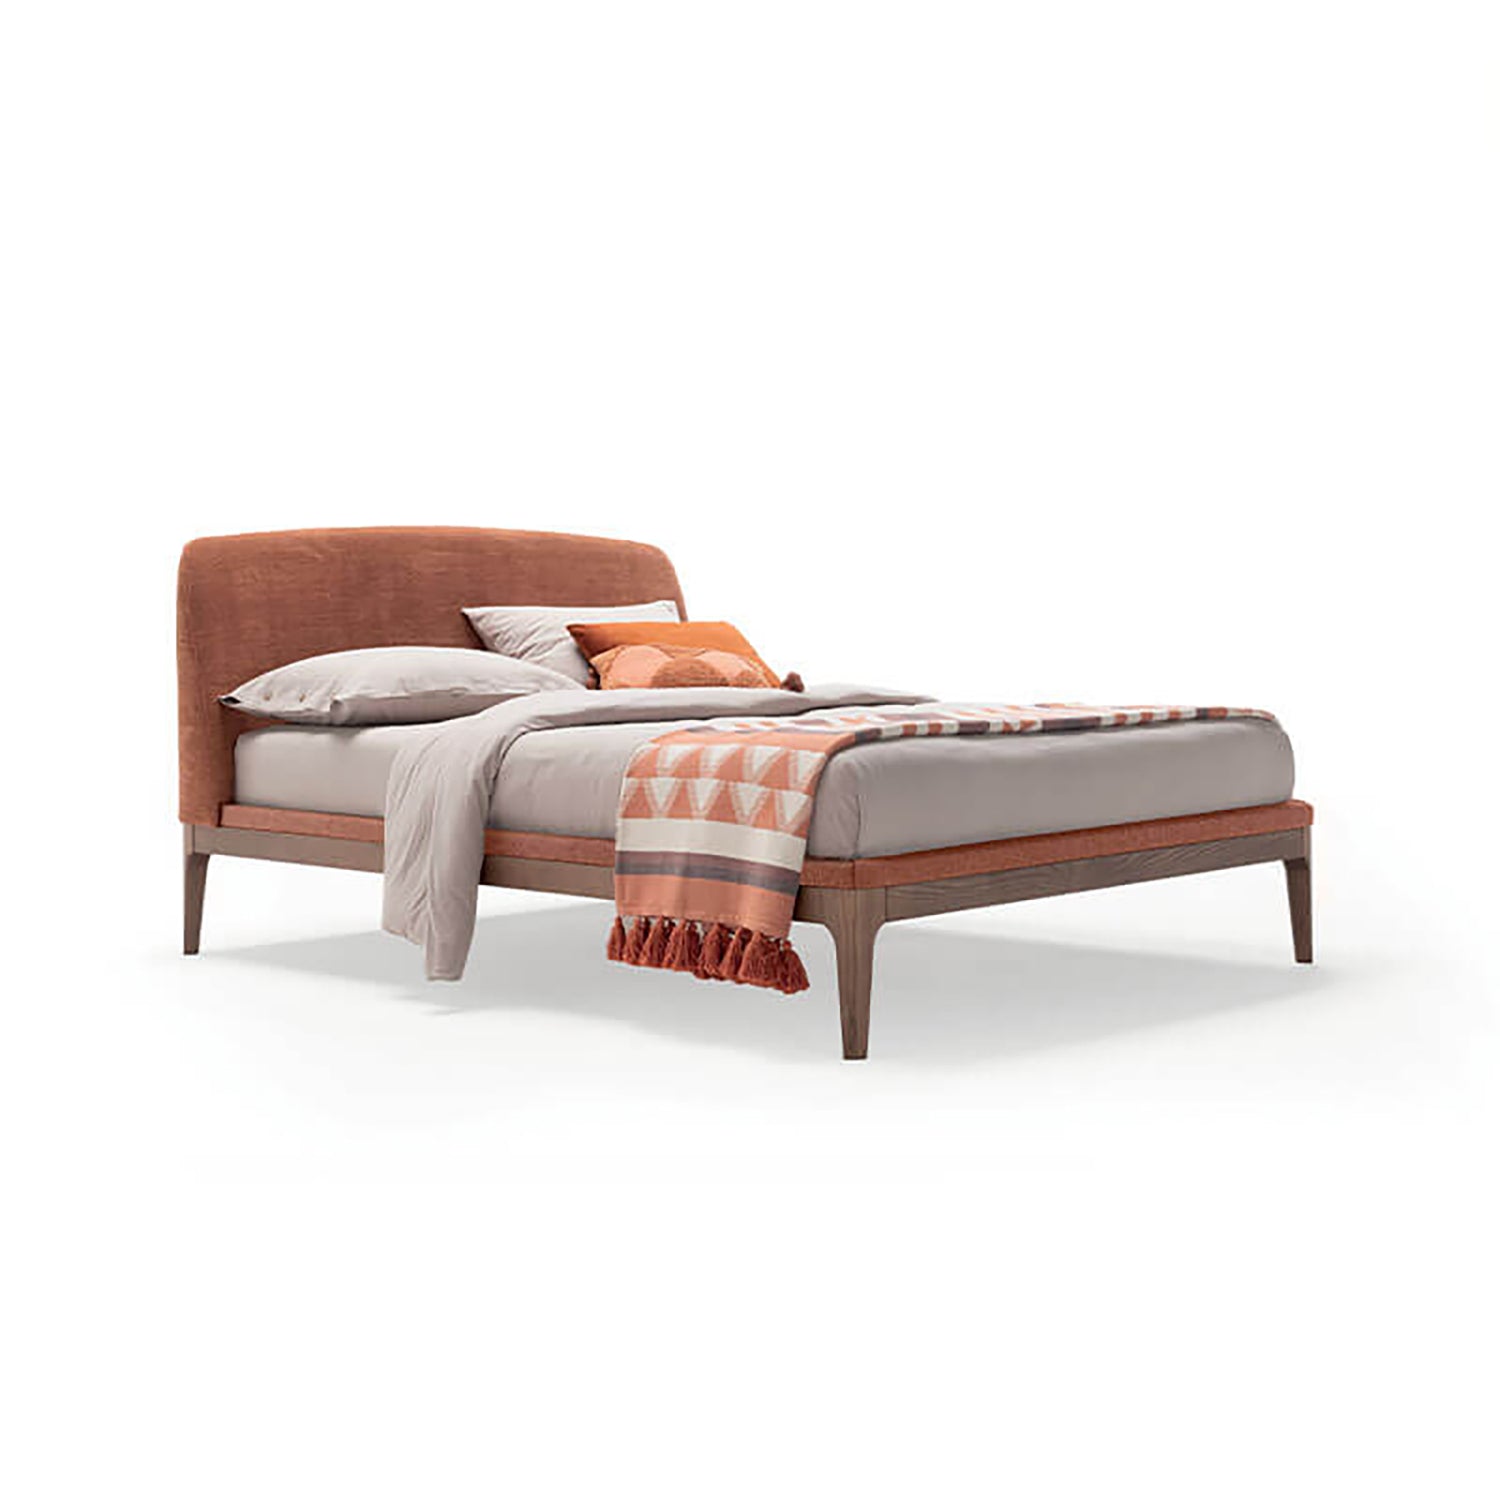 Elegance Bed with Upholstered Frame